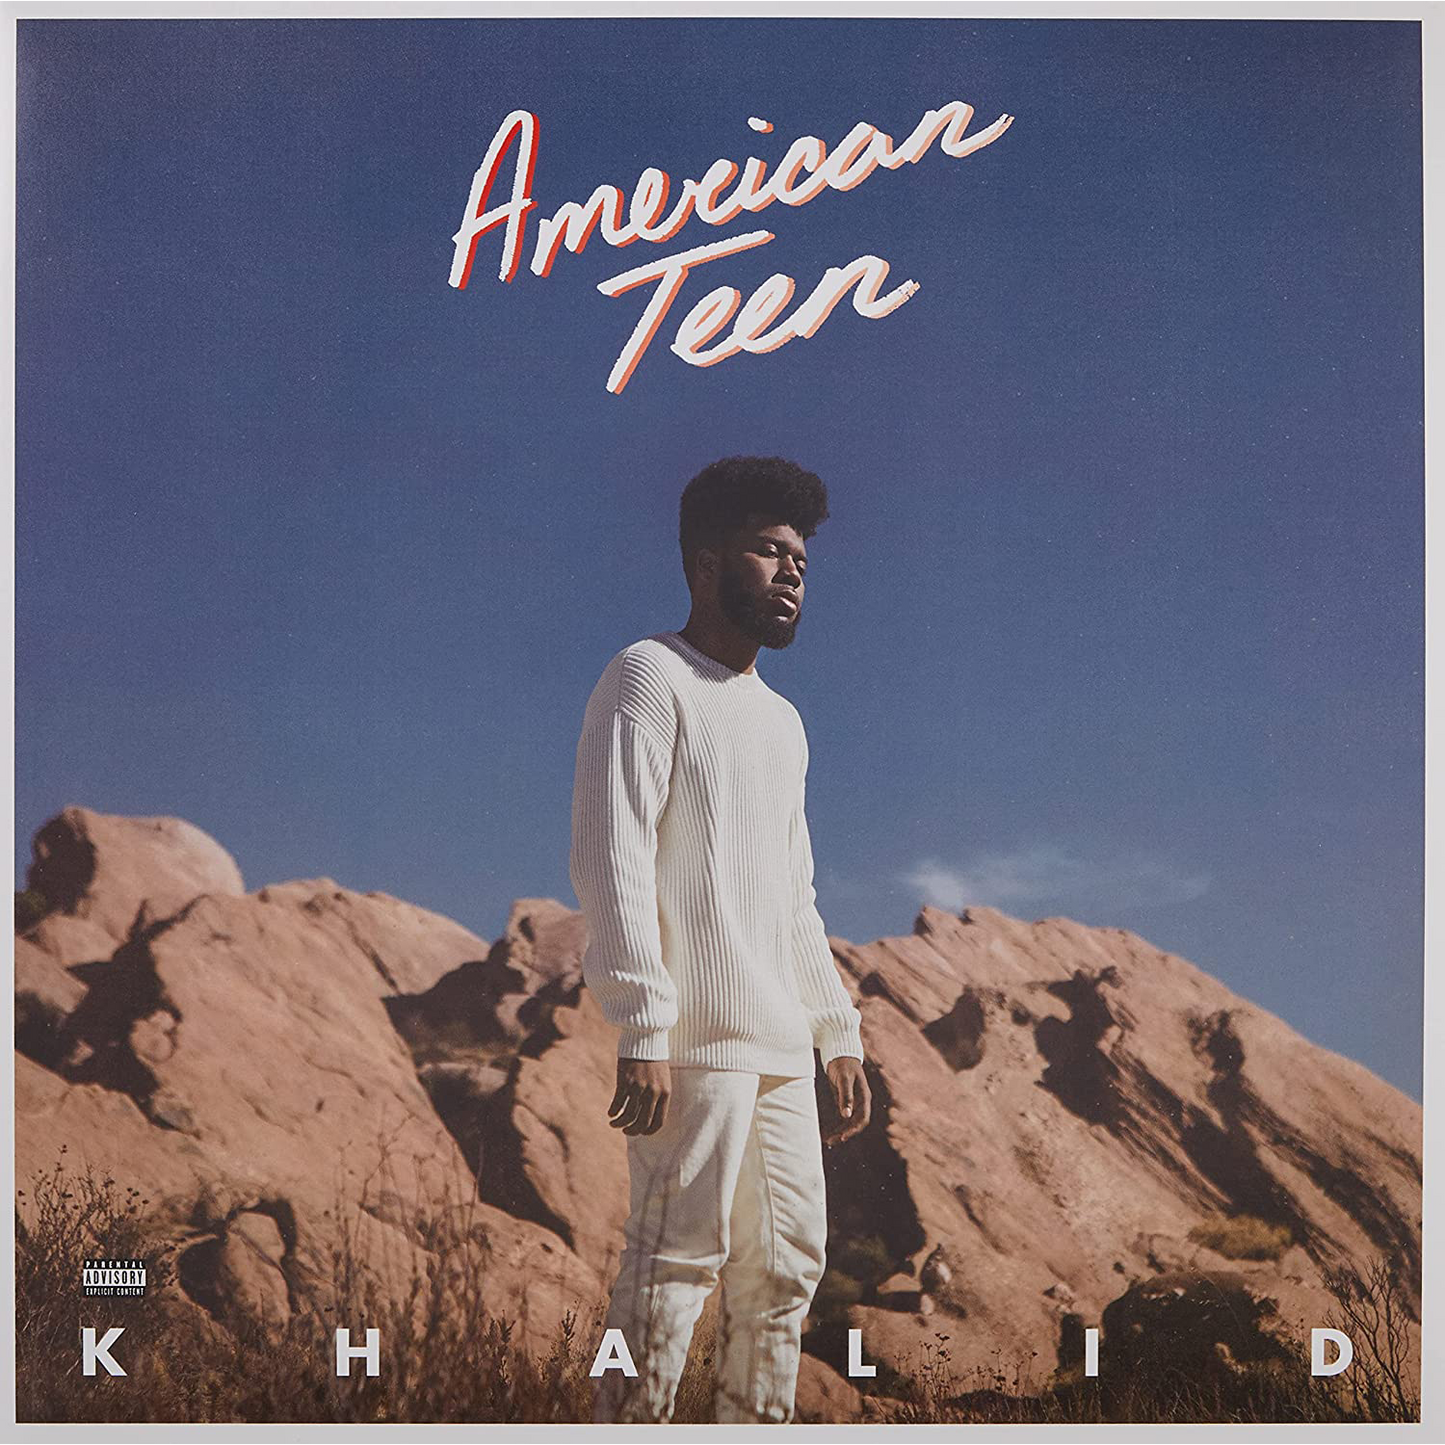 Khalid - American Teen [Explicit Content] (2 Lp's)